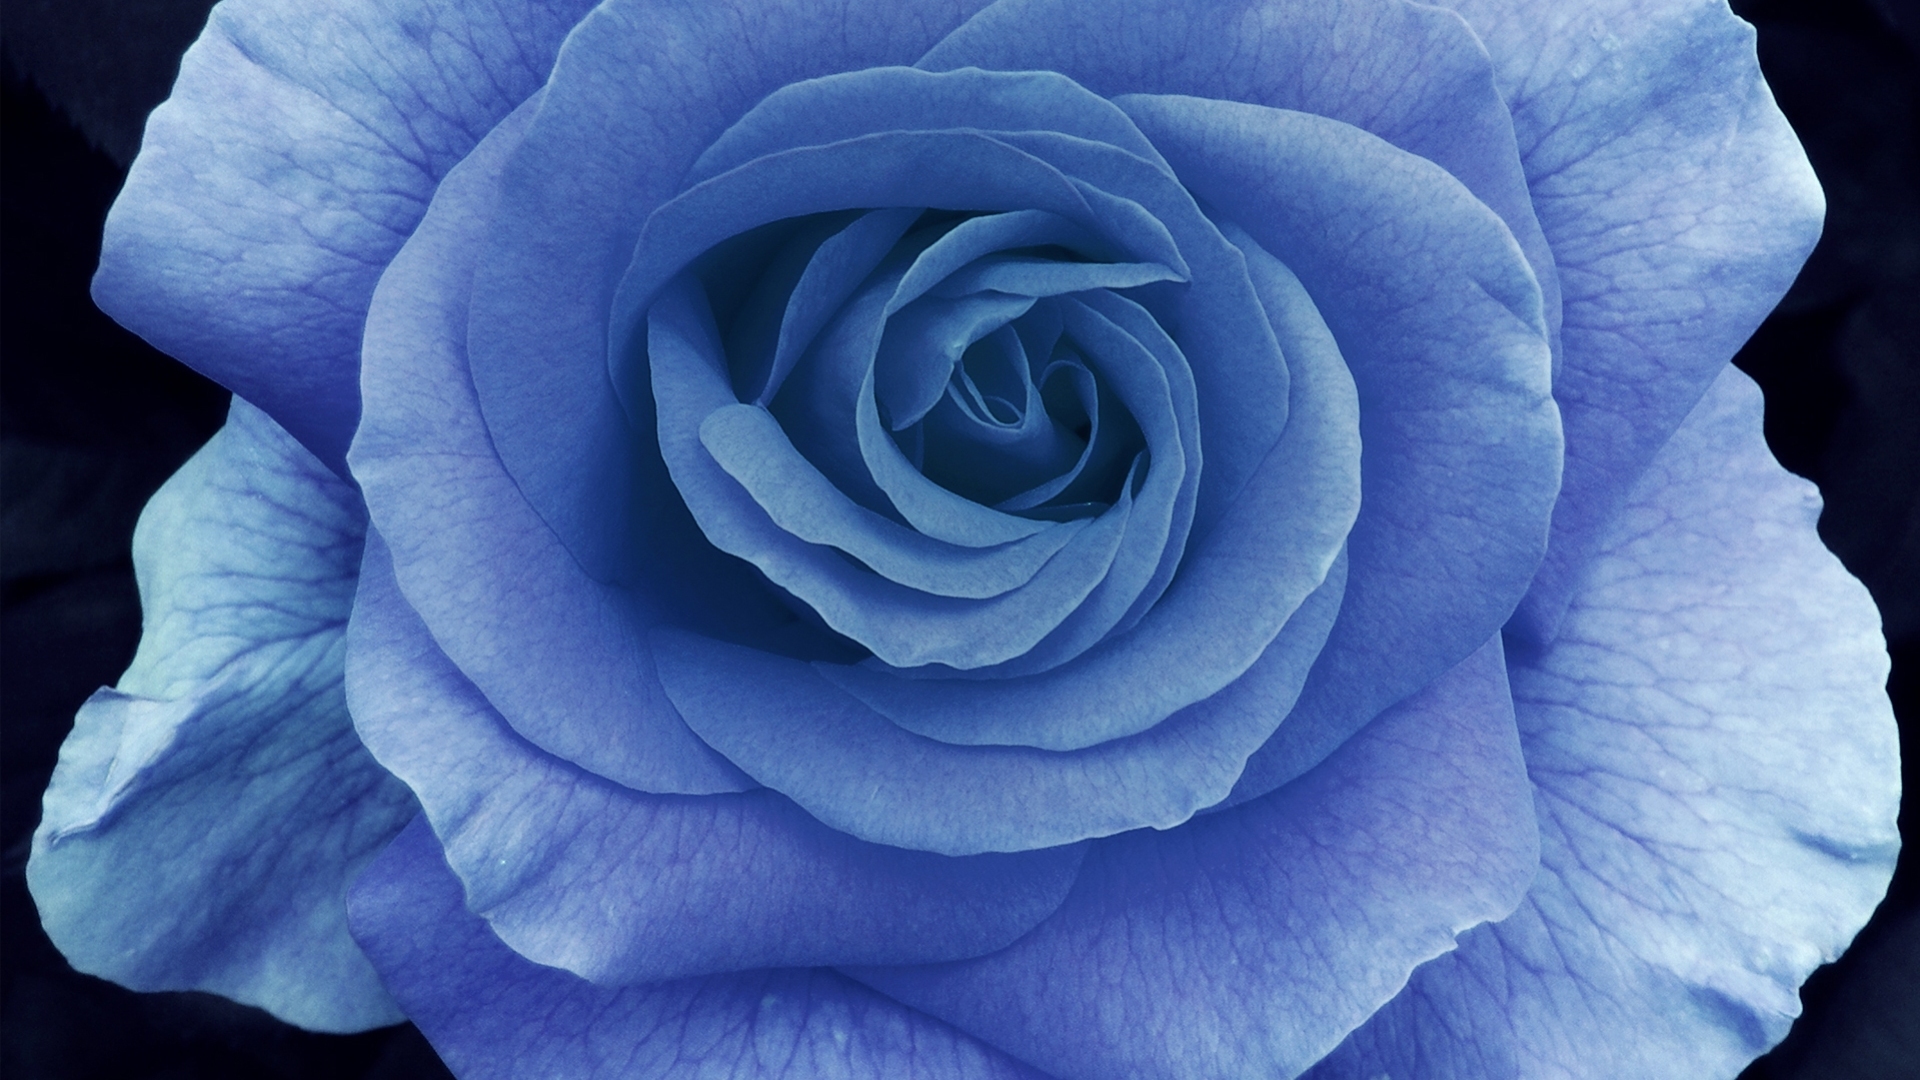 große rosentapete,blume,rose,blühende pflanze,blütenblatt,blau